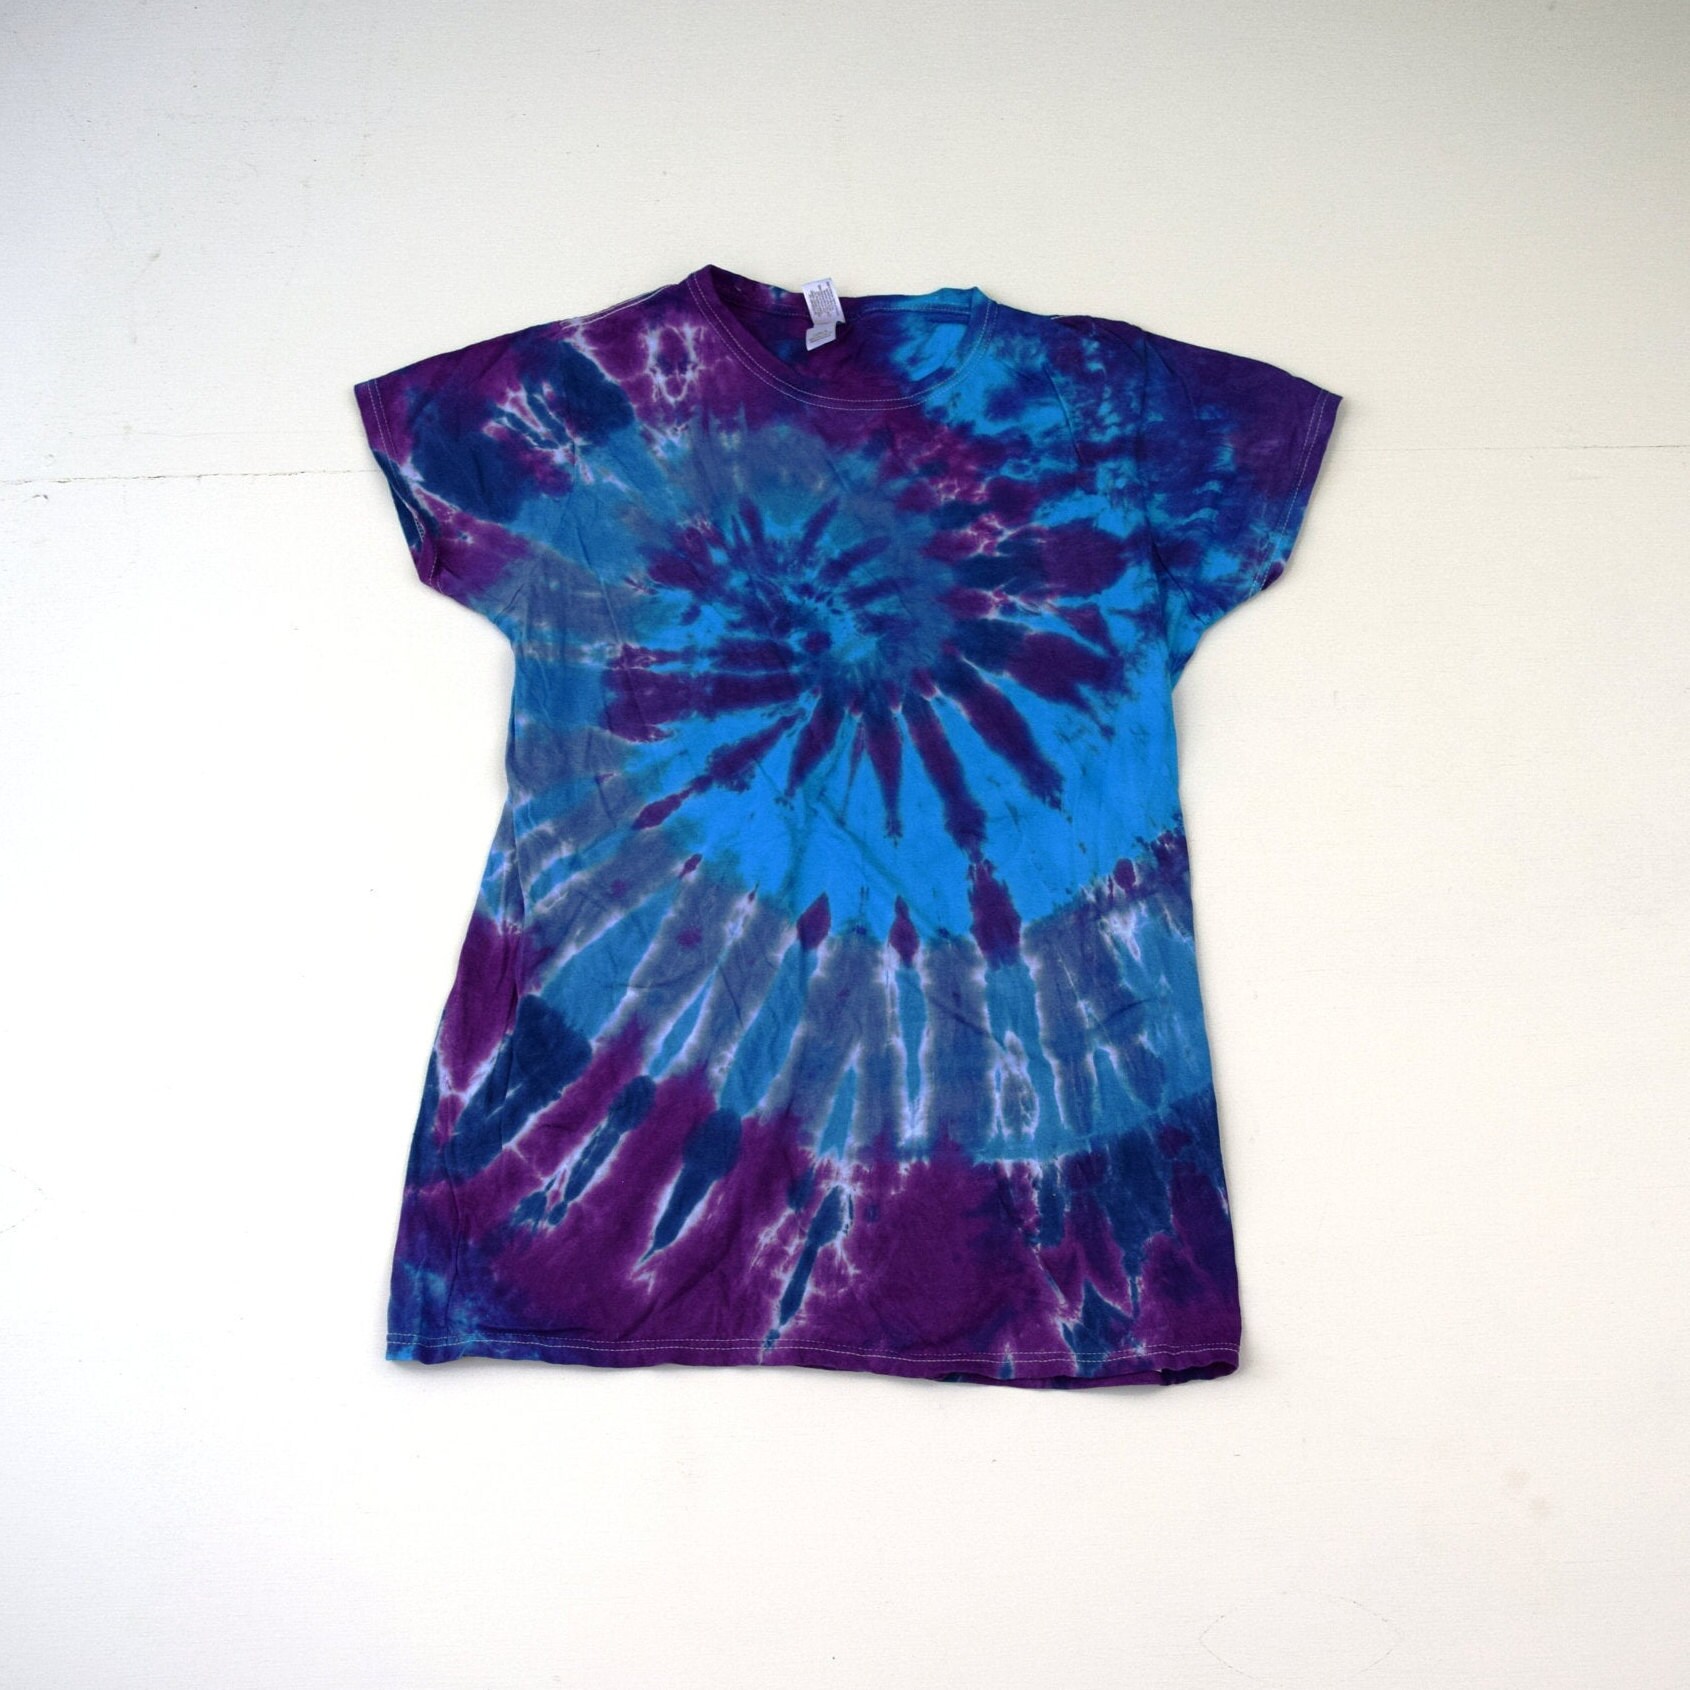 strudel ~ Spiral Tie Dye T-Shirt | Gildan Softstyle Damen Junior Größe Xl Ist Gleich Wie Erwachsene Medium | One Of A Kind von madebyhippies